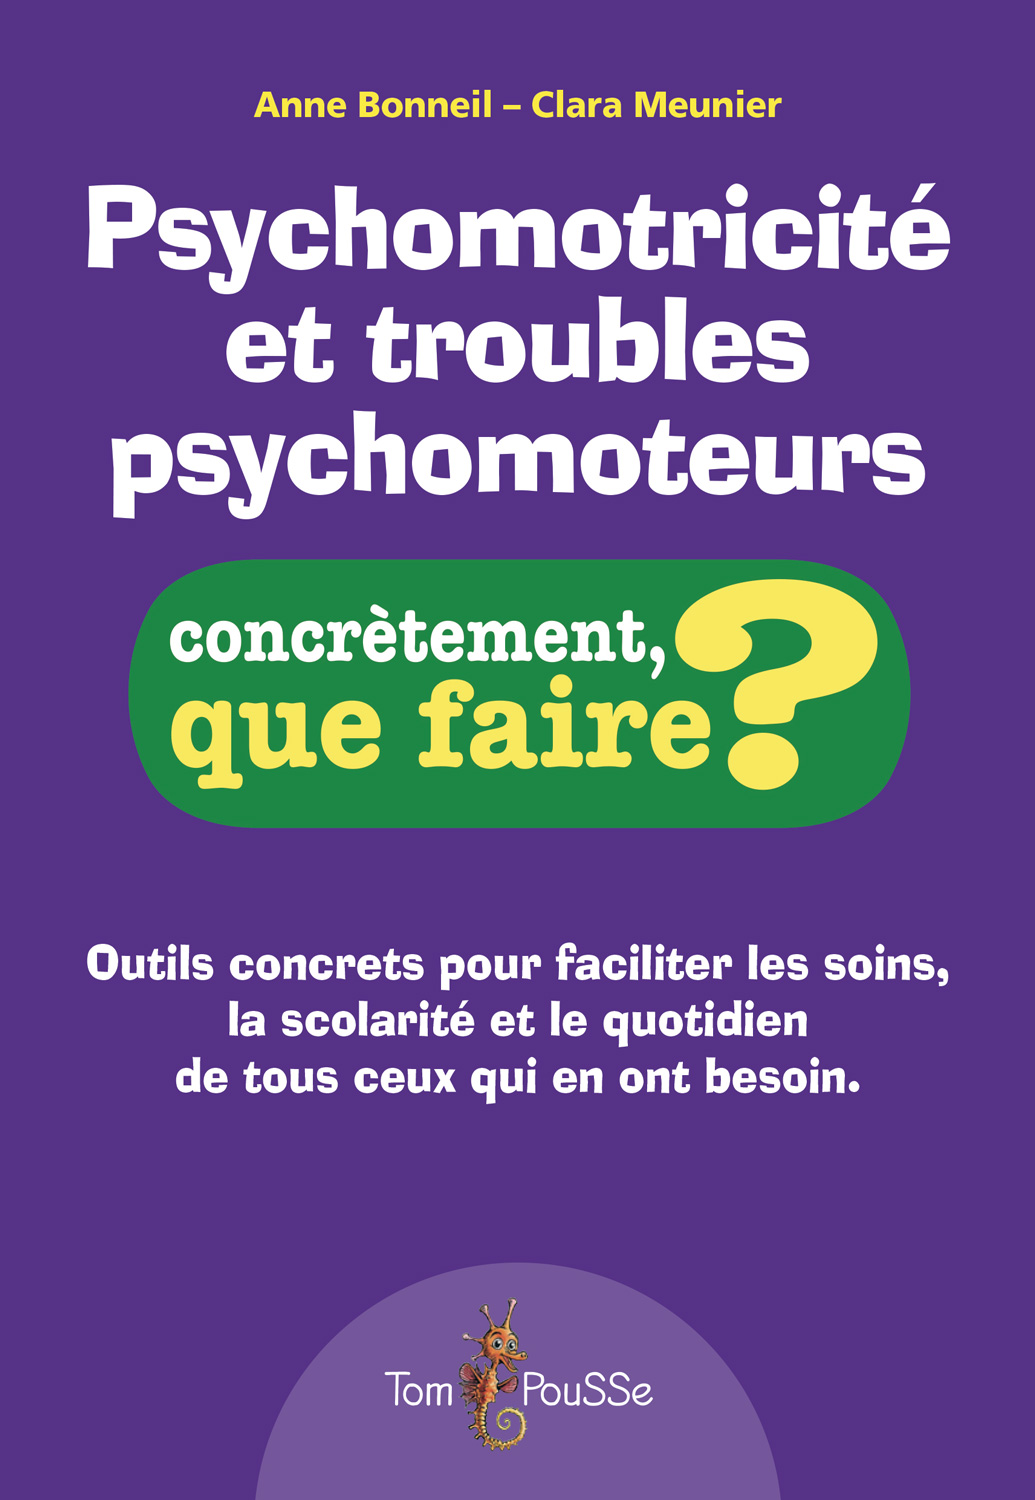 Psychomotricite-et-troubles_WEB